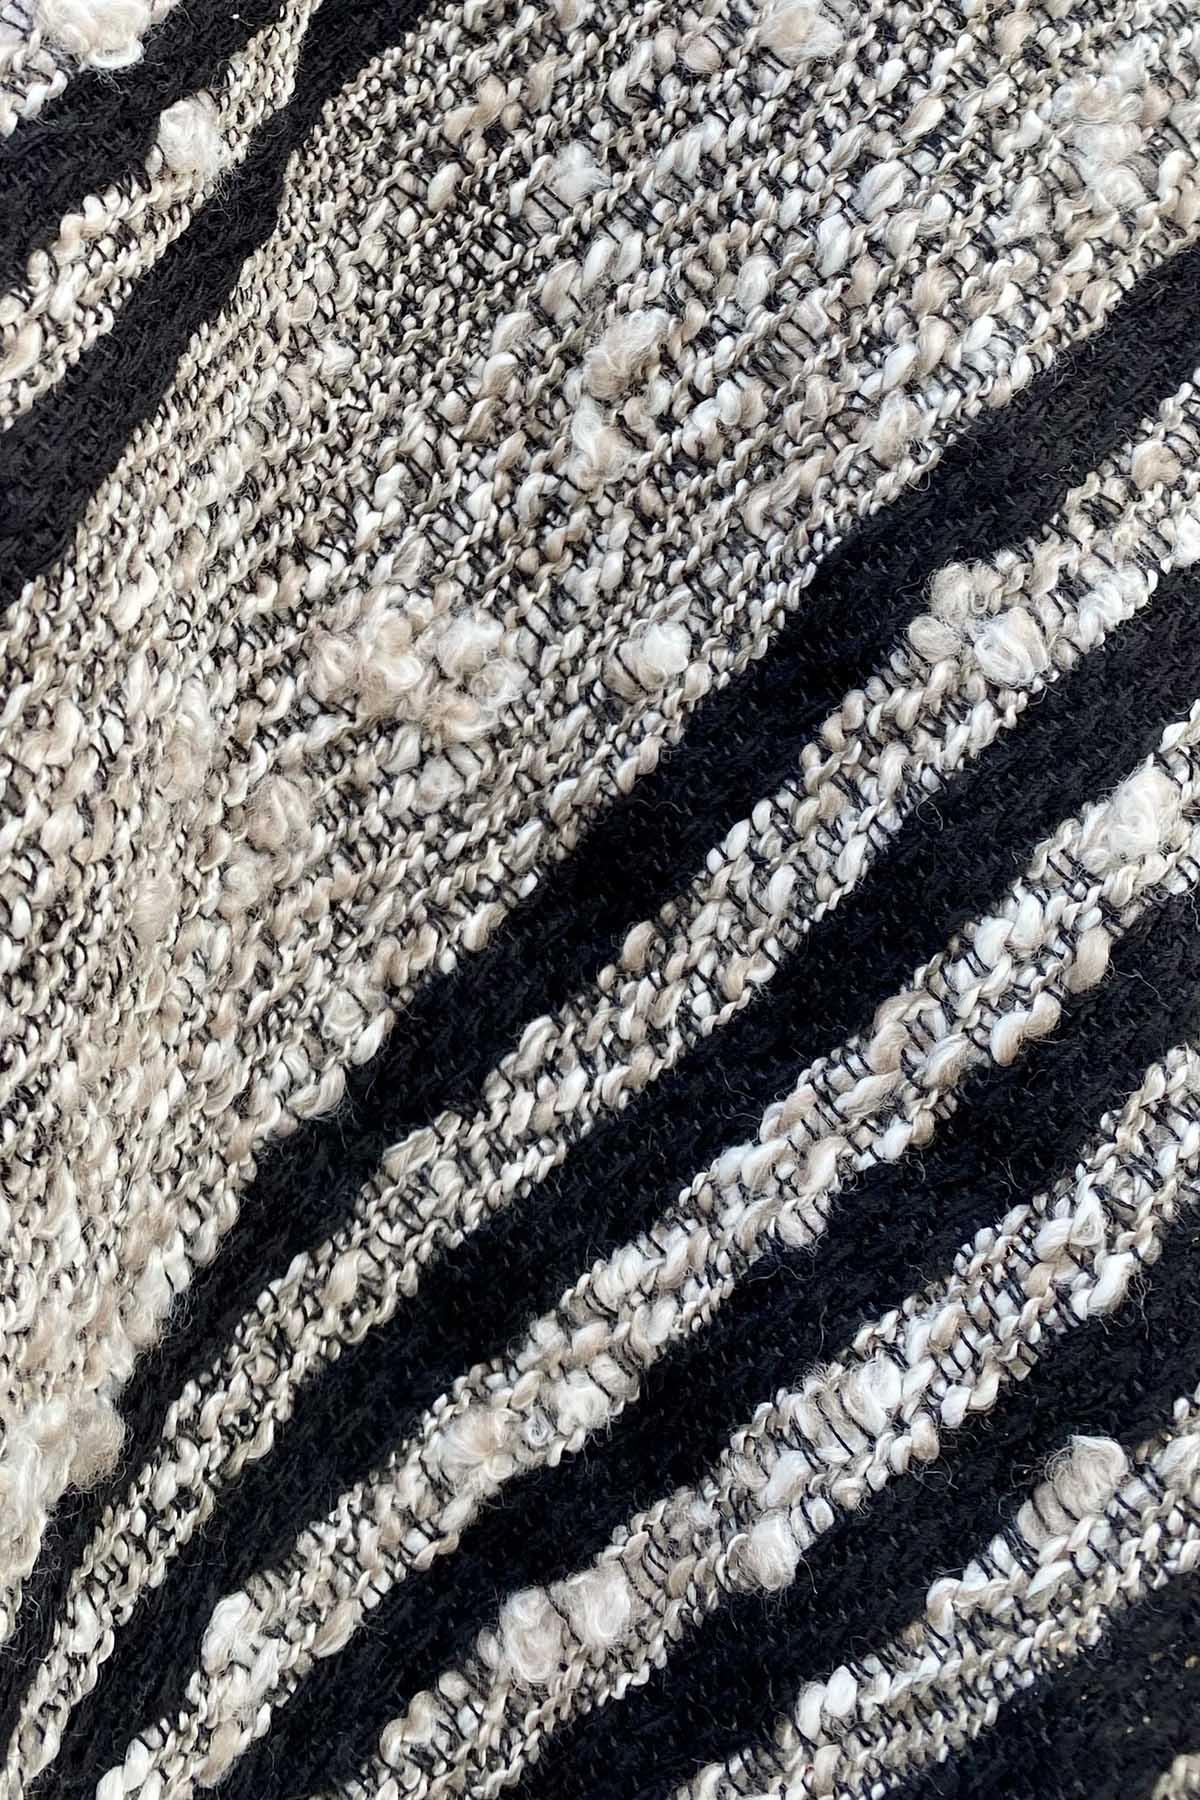 Flavia Amato indossa Sciarpa scialle telaio filati recupero bianco strisce nero malia lab atelier moda etica sostenibile artigianale accessori artigianali dettaglio trama